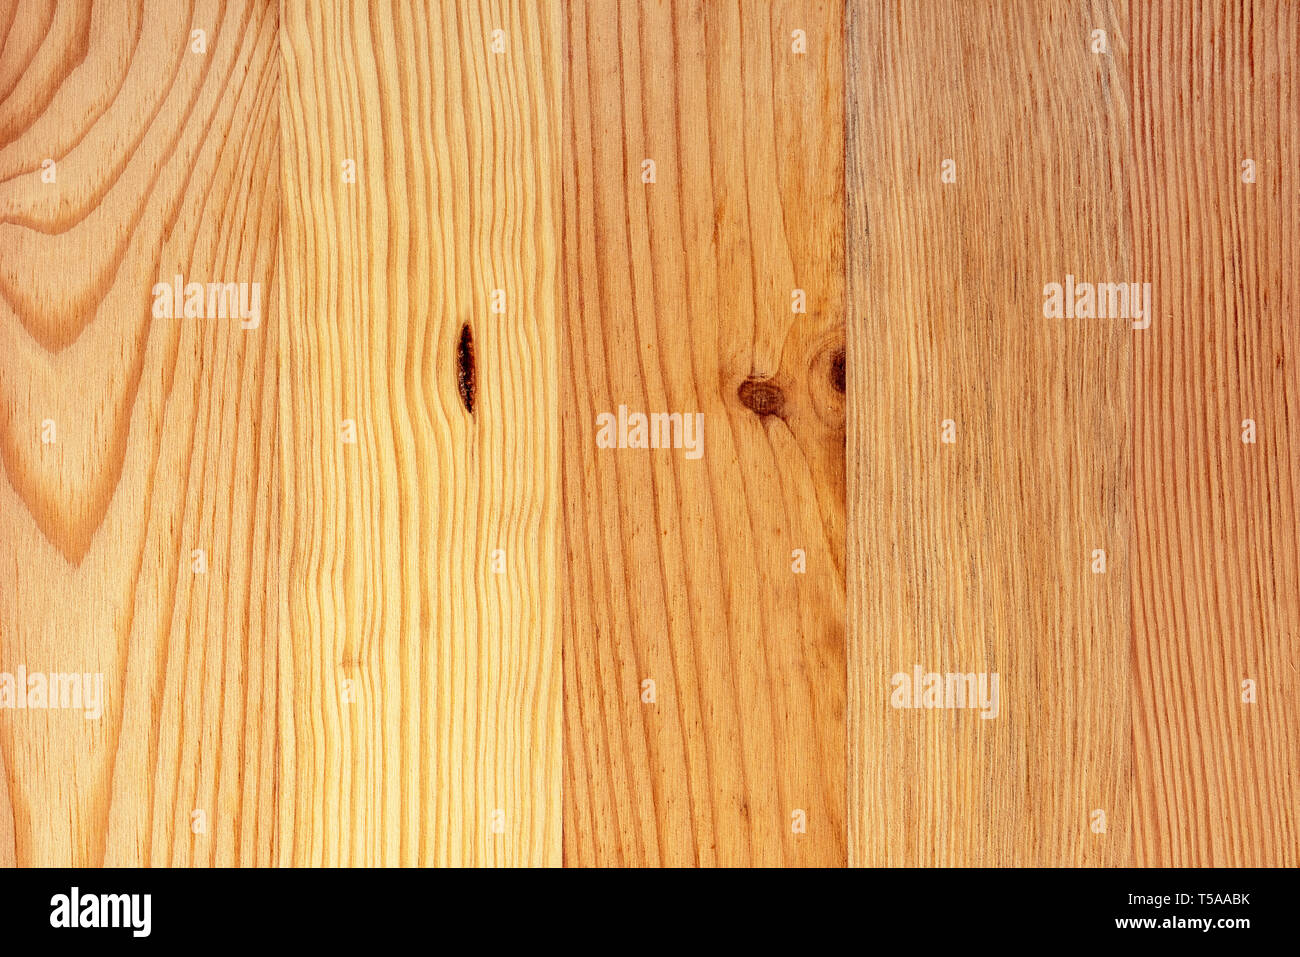 In legno di pino pavimenti bordo texture, decorativo modello naturale come sfondo, vista dall'alto Foto Stock